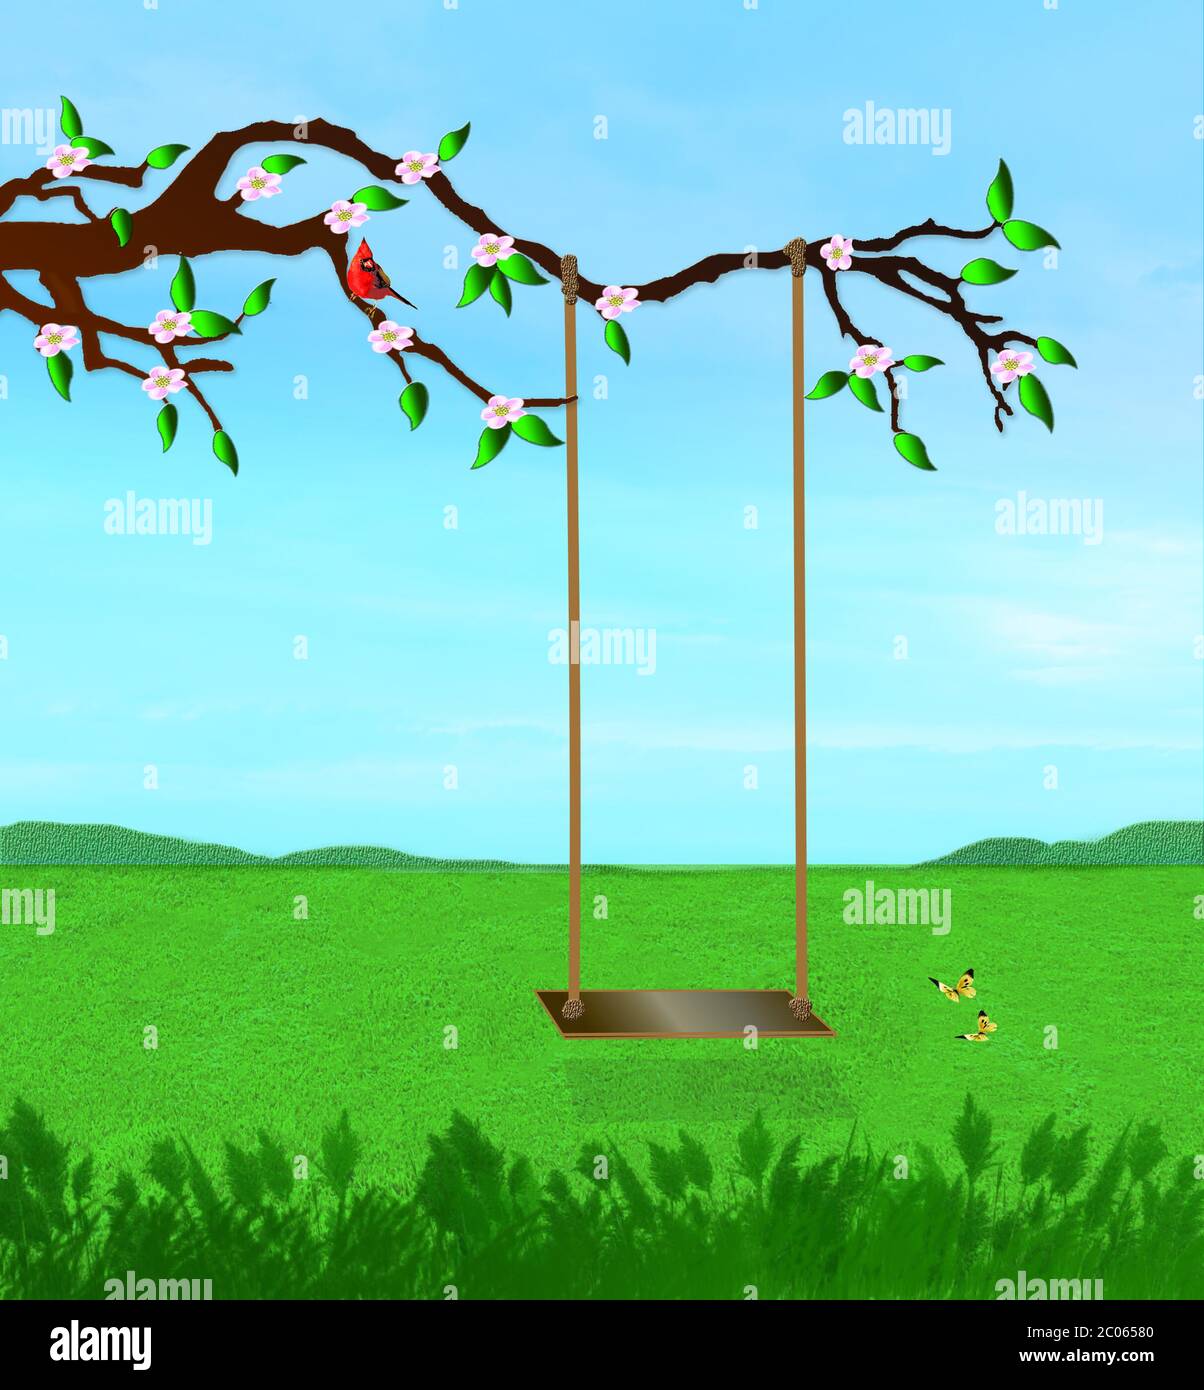 Scène graphique d'une balançoire suspendue sur une grande branche d'arbre avec des fleurs roses. Papillons et cardinal rouge inclus dans l'image. Banque D'Images